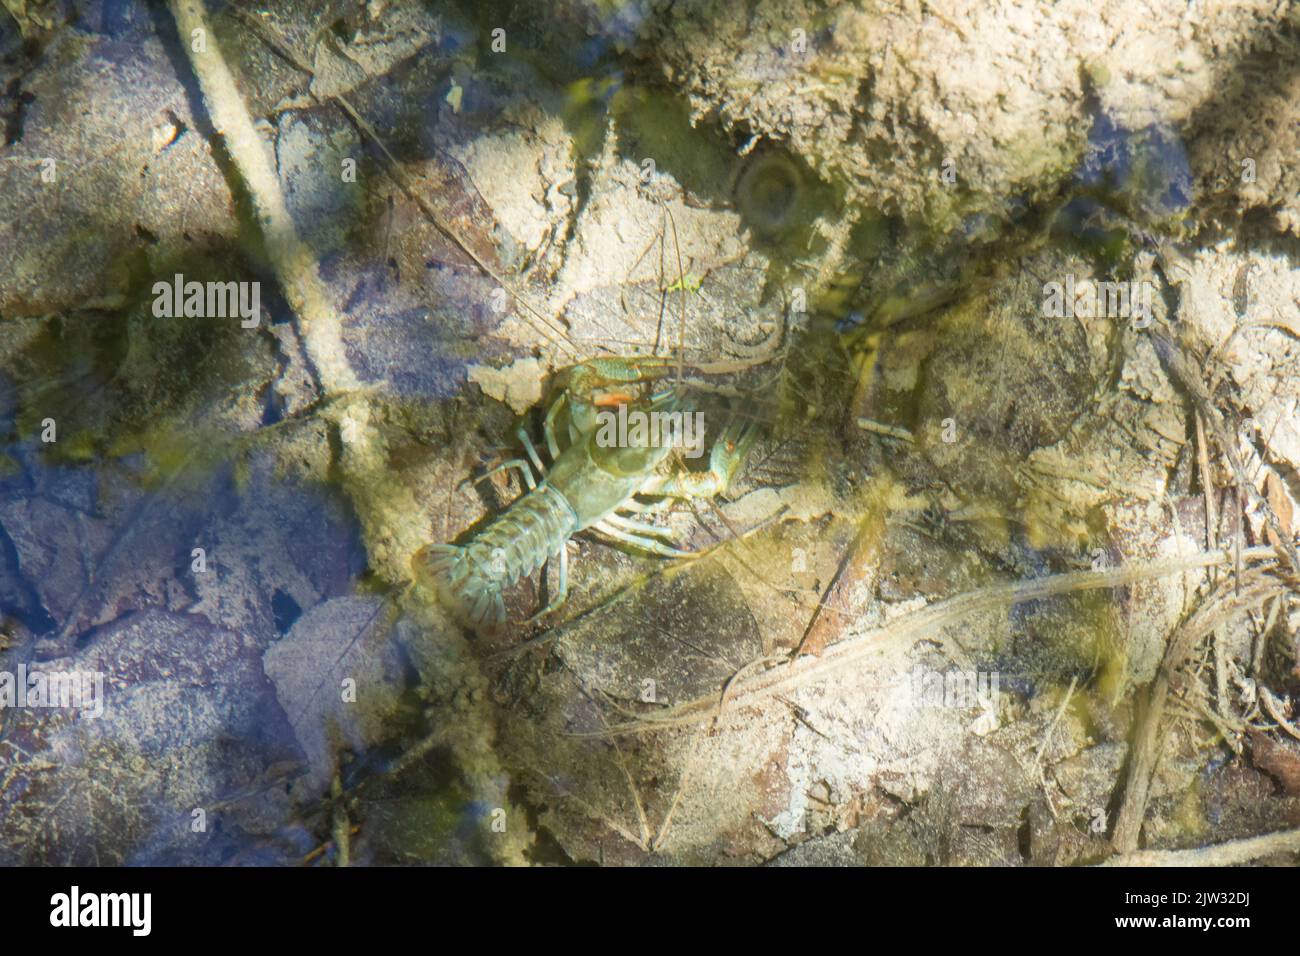 Un cangrejo de río europeo (Astacus astacus) en las aguas poco profundas y claras de una piscina vista desde arriba. Parque Nacional de los Lagos de Plitvice, Coatia, Europa. Foto de stock